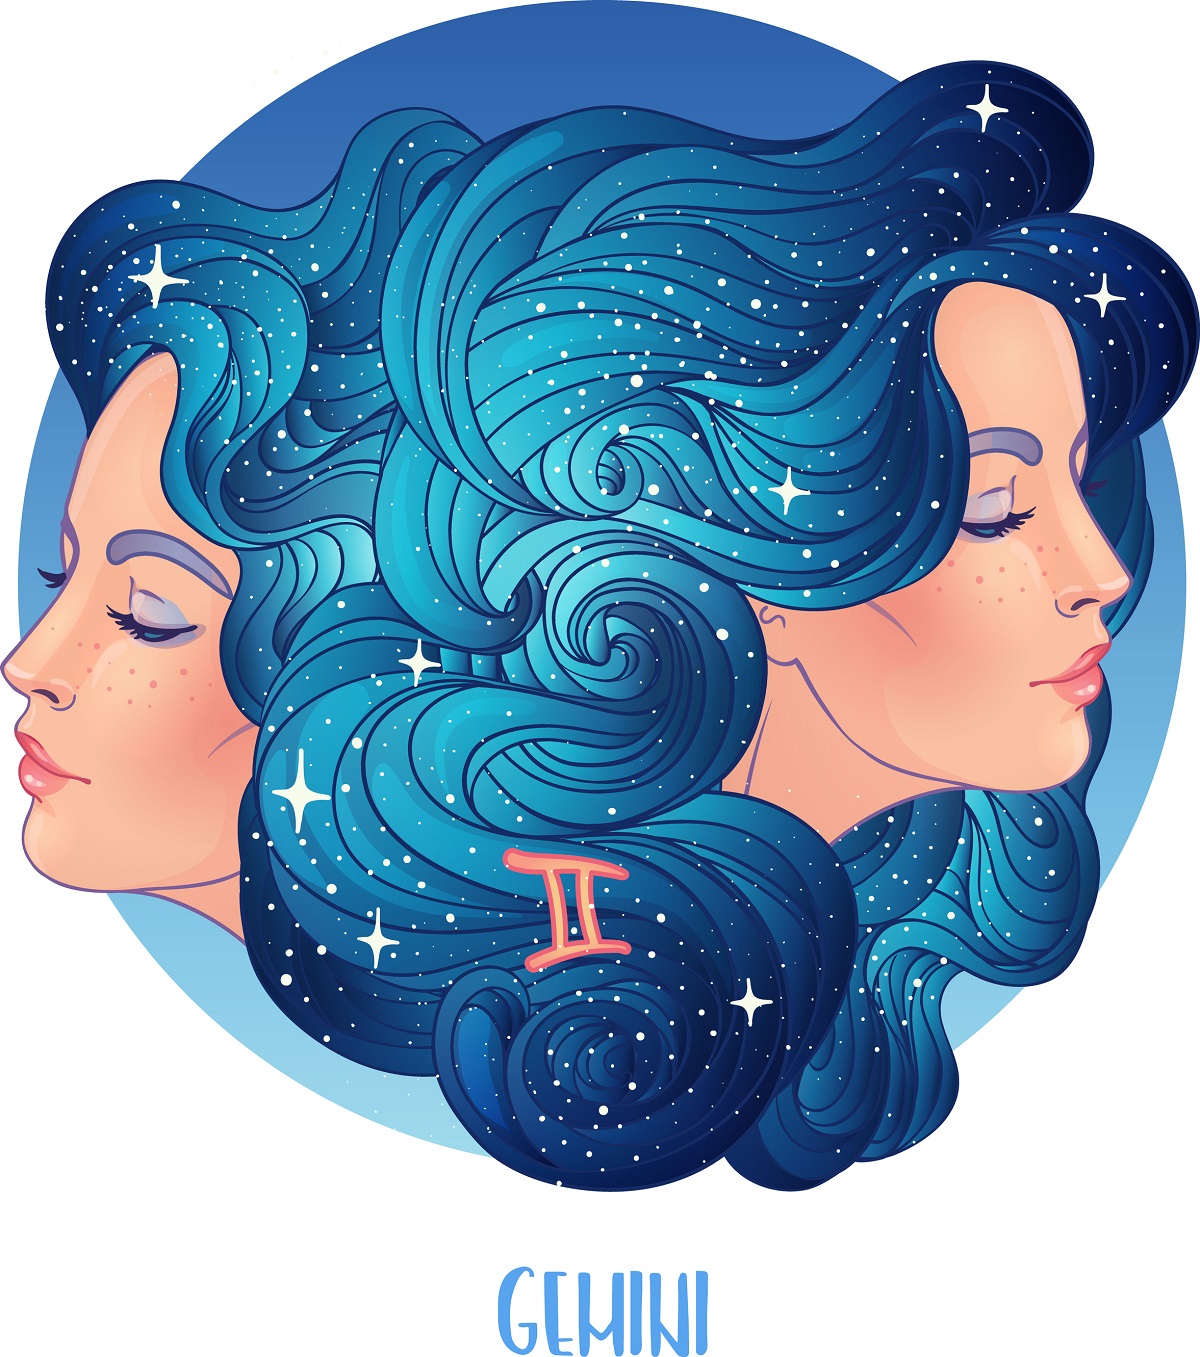 Două femei cu părul albastru care stau spate în spate cu ochii închiși și reprezintă nativii din zodia Gemenilor